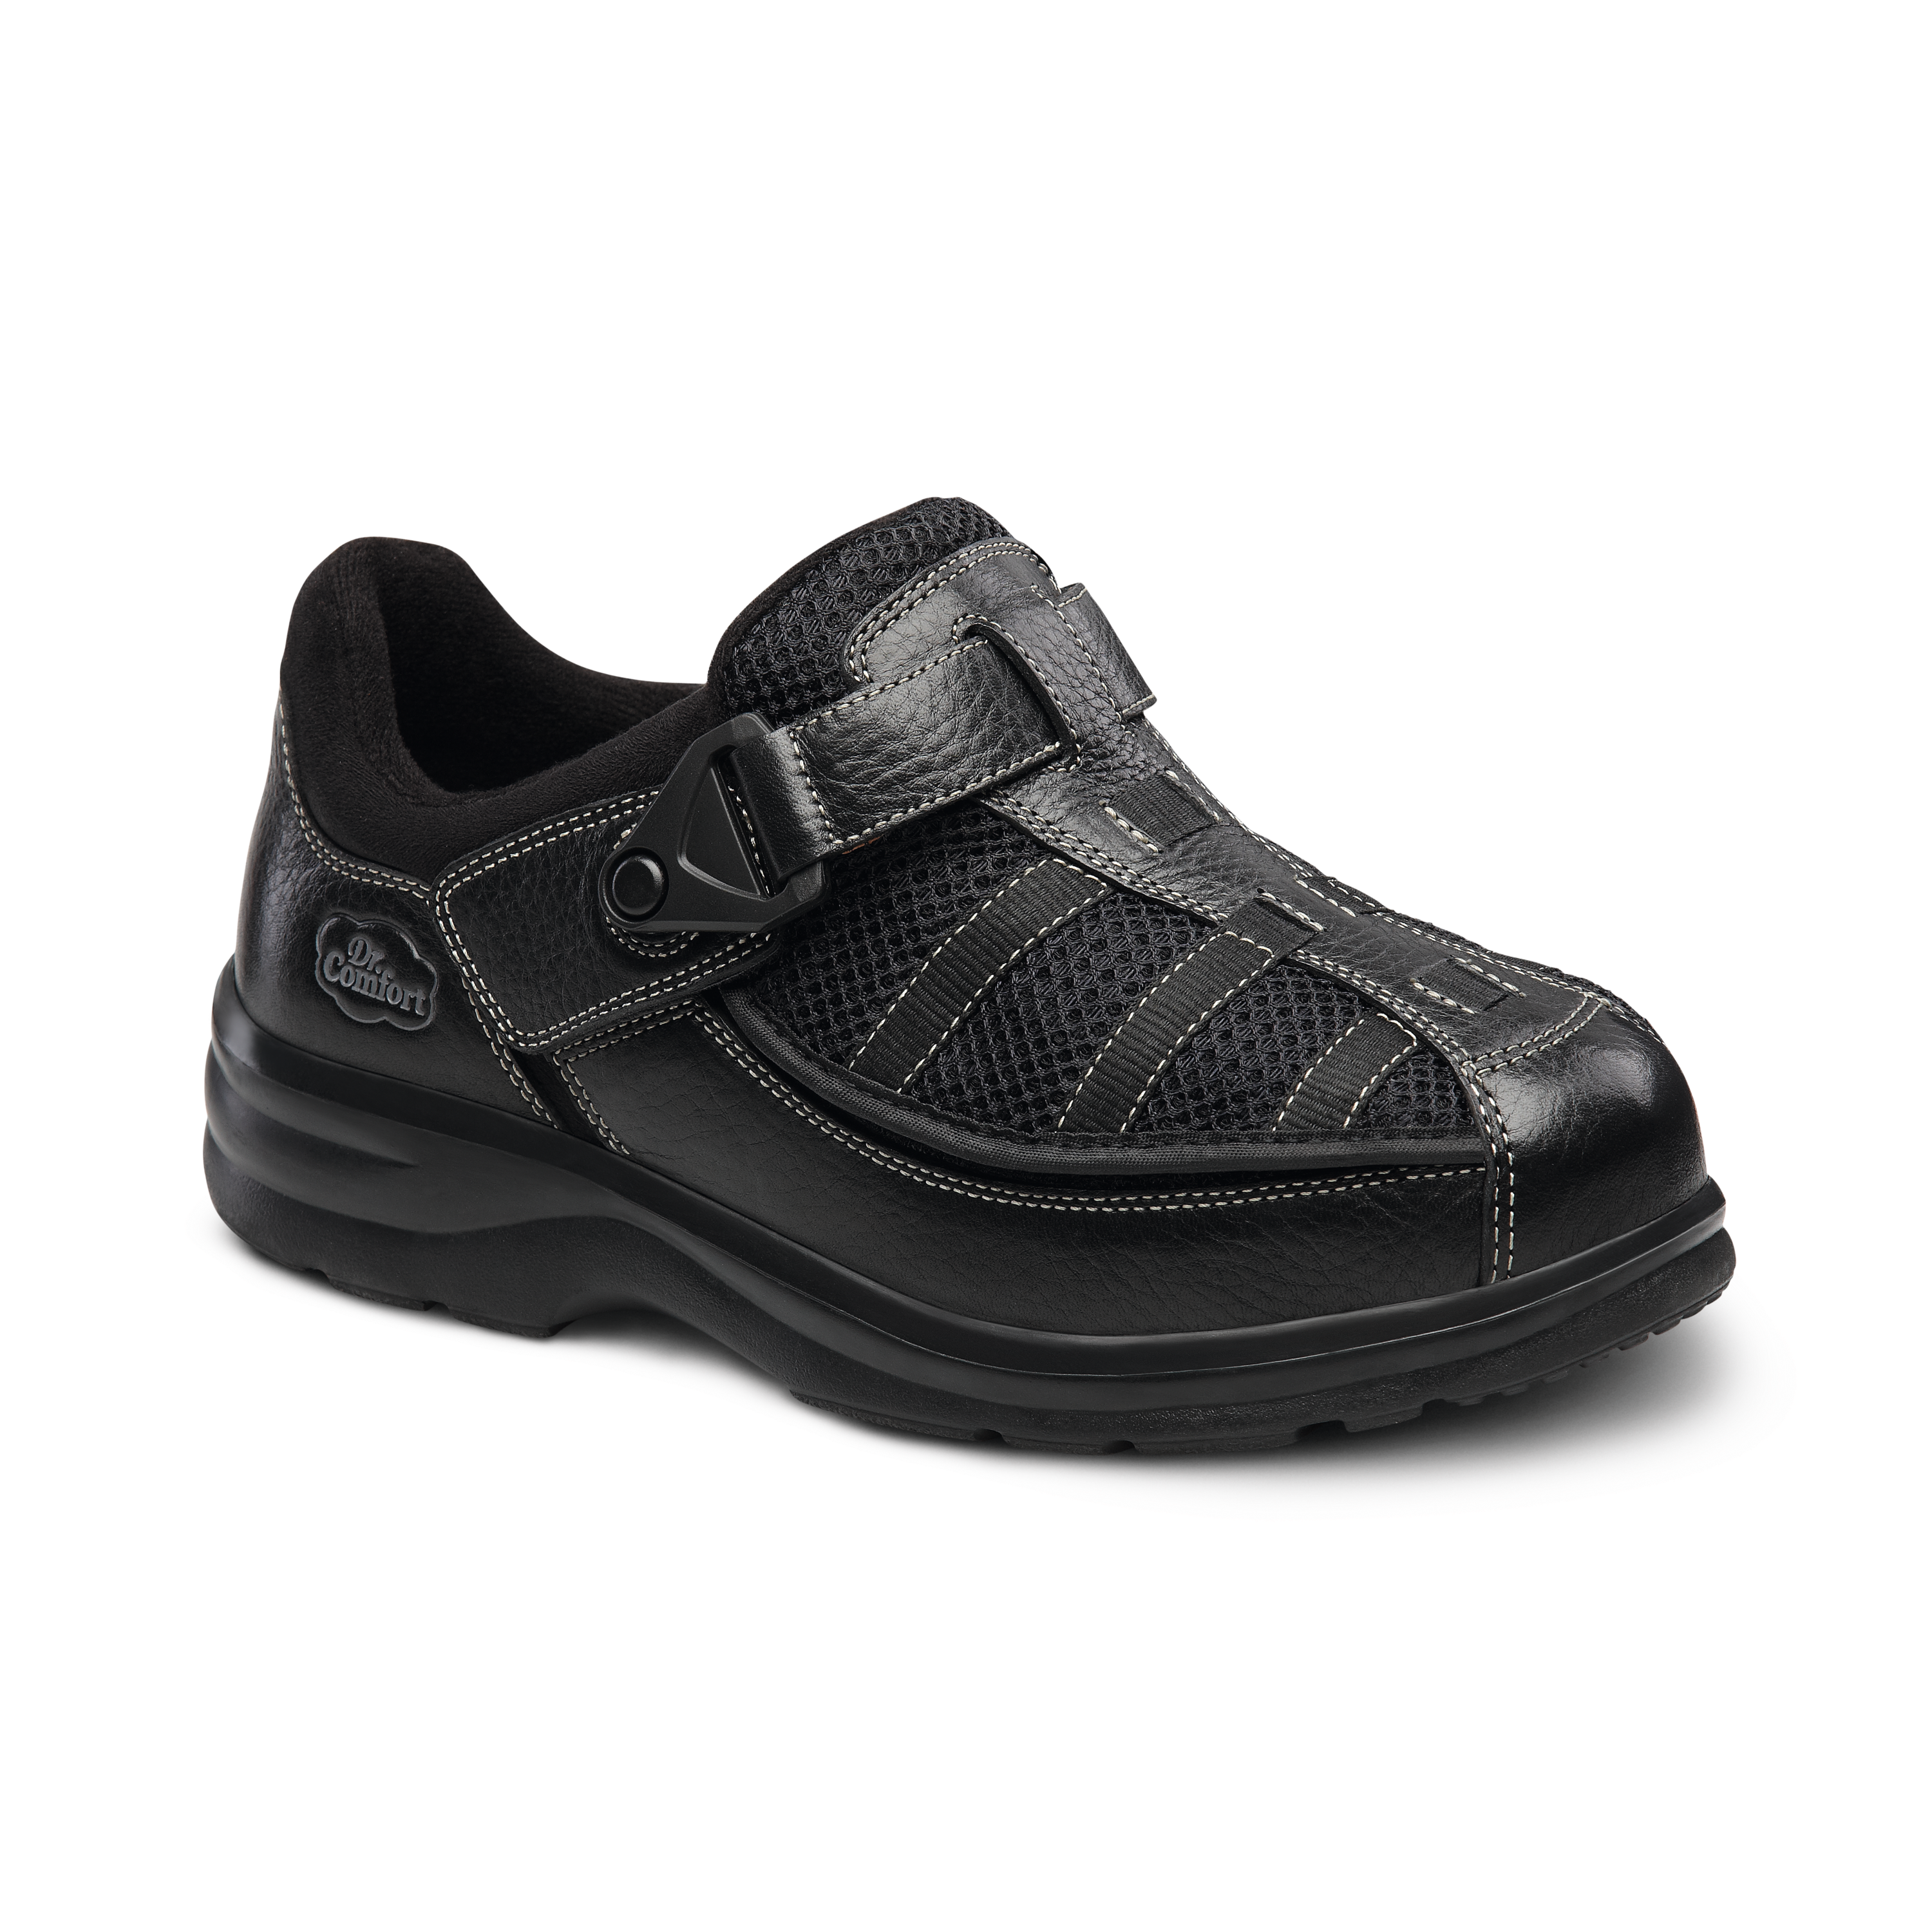 Produktbild DR. COMFORT® Lucie-X schwarz, Orthopädische Schuhe, Klassischer Verbandschuh-Schnitt in einer robusten Ausführung